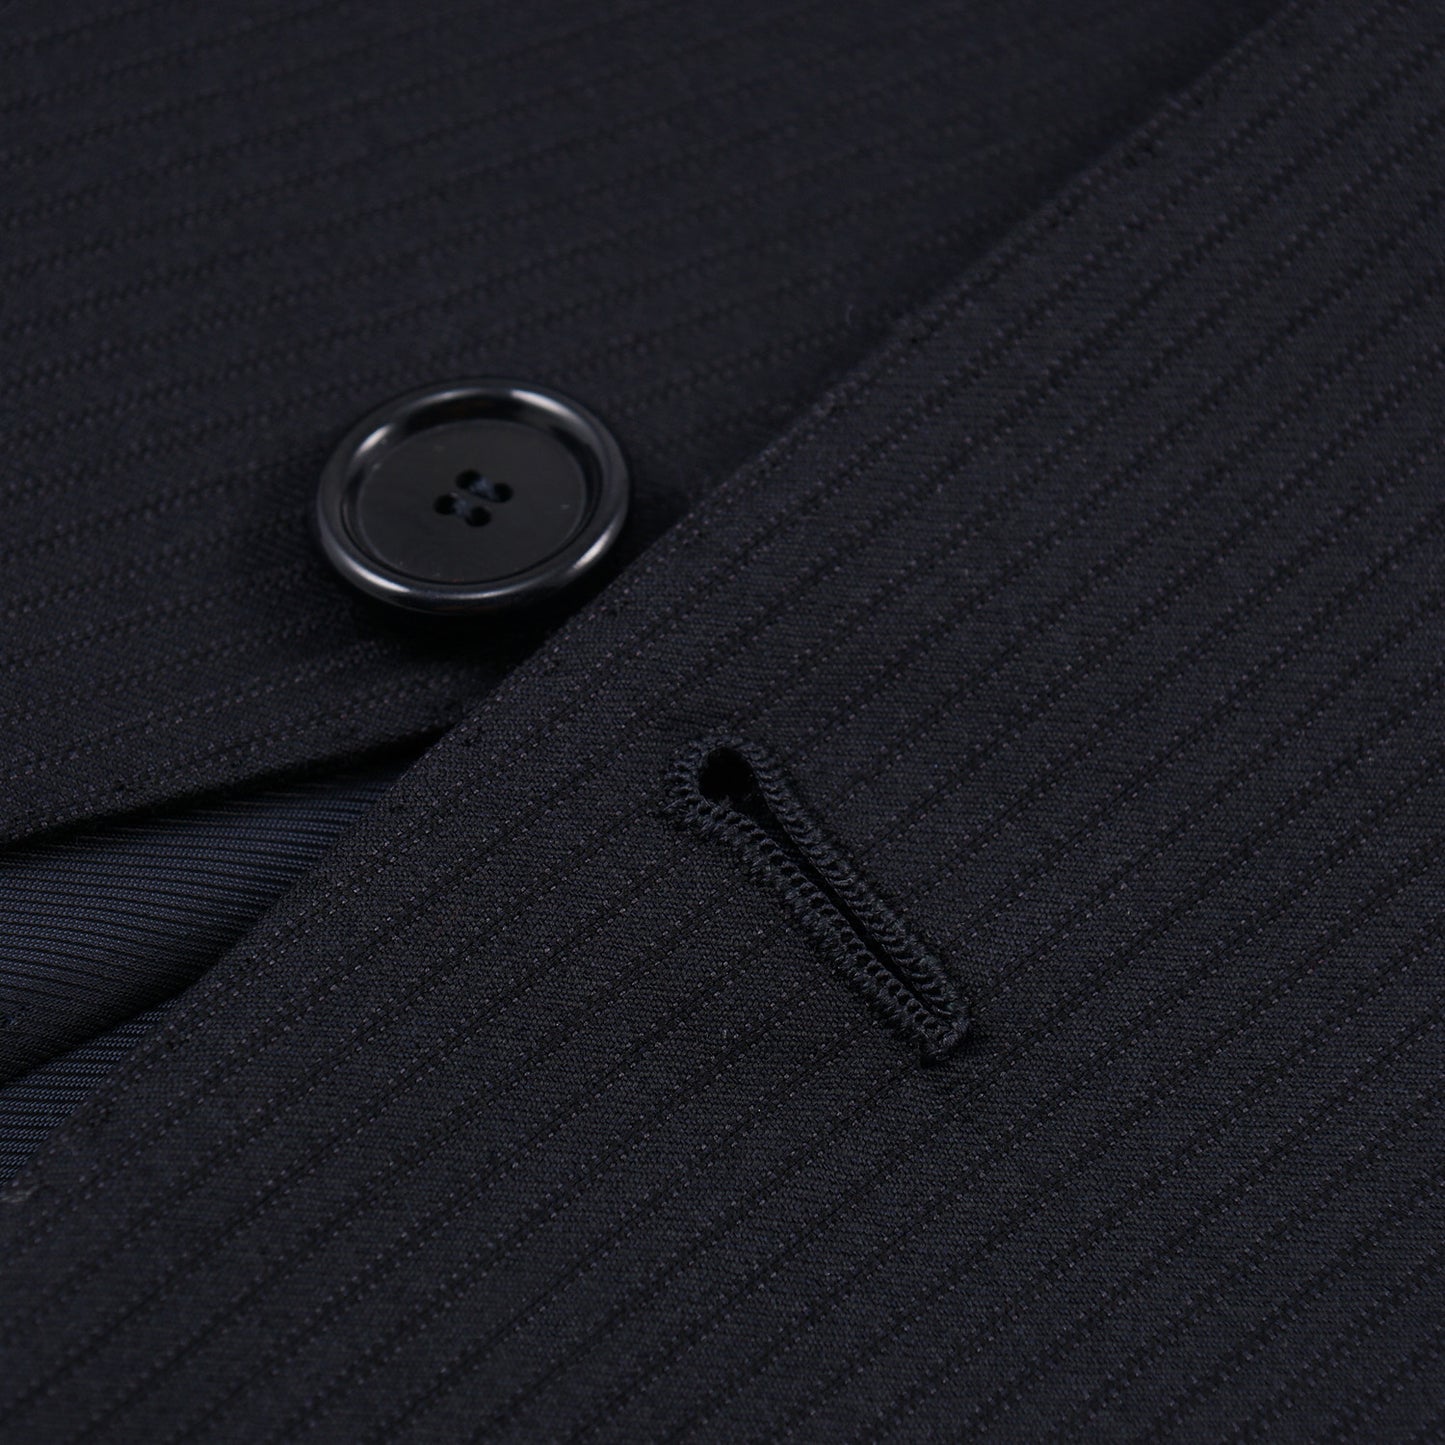 Cesare Attolini Modern-Fit Super 160s Wool Suit - Top Shelf Apparel